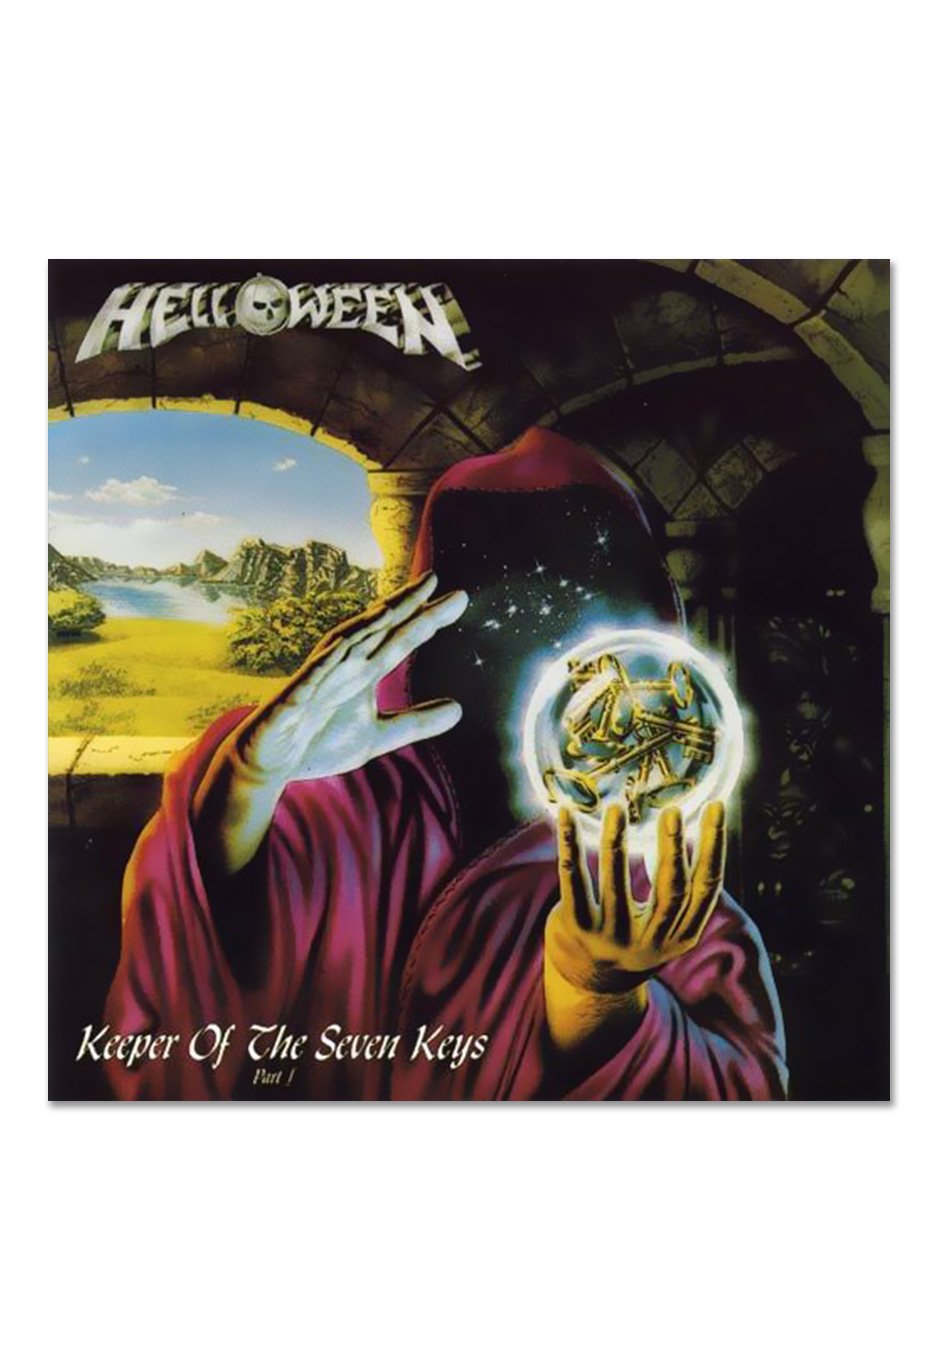 Helloween - Keeper of the Seven Keys Pt.1 Blue - Splattered Vinyl 